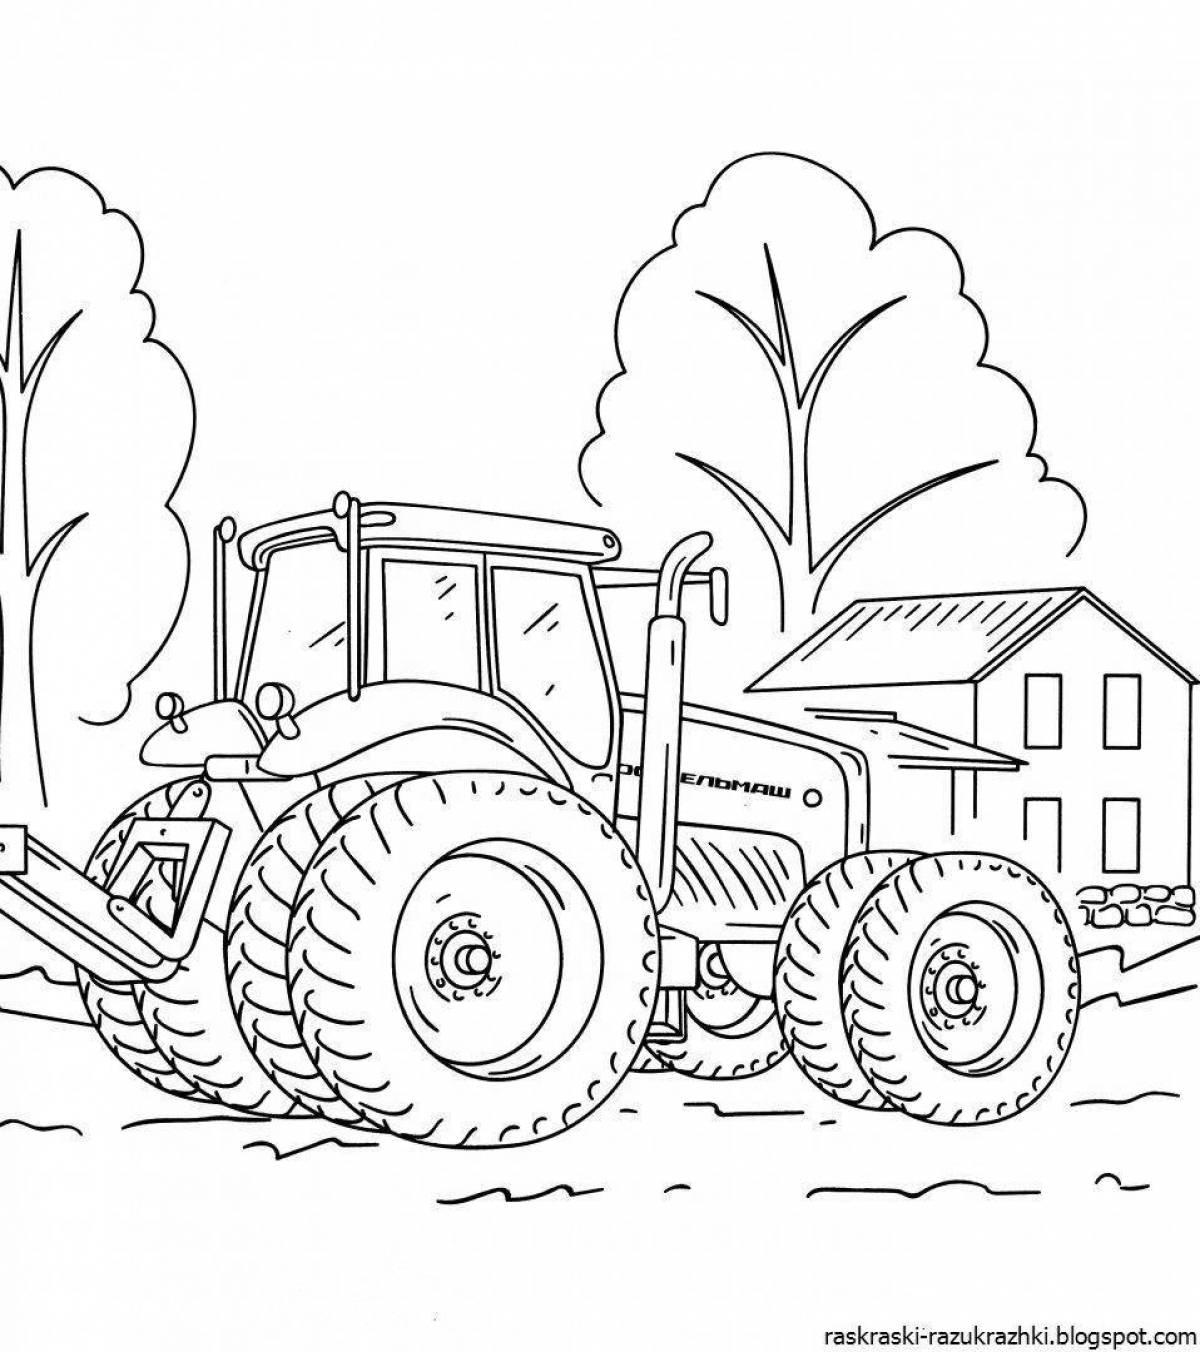 Joyful tractor coloring book for preschoolers